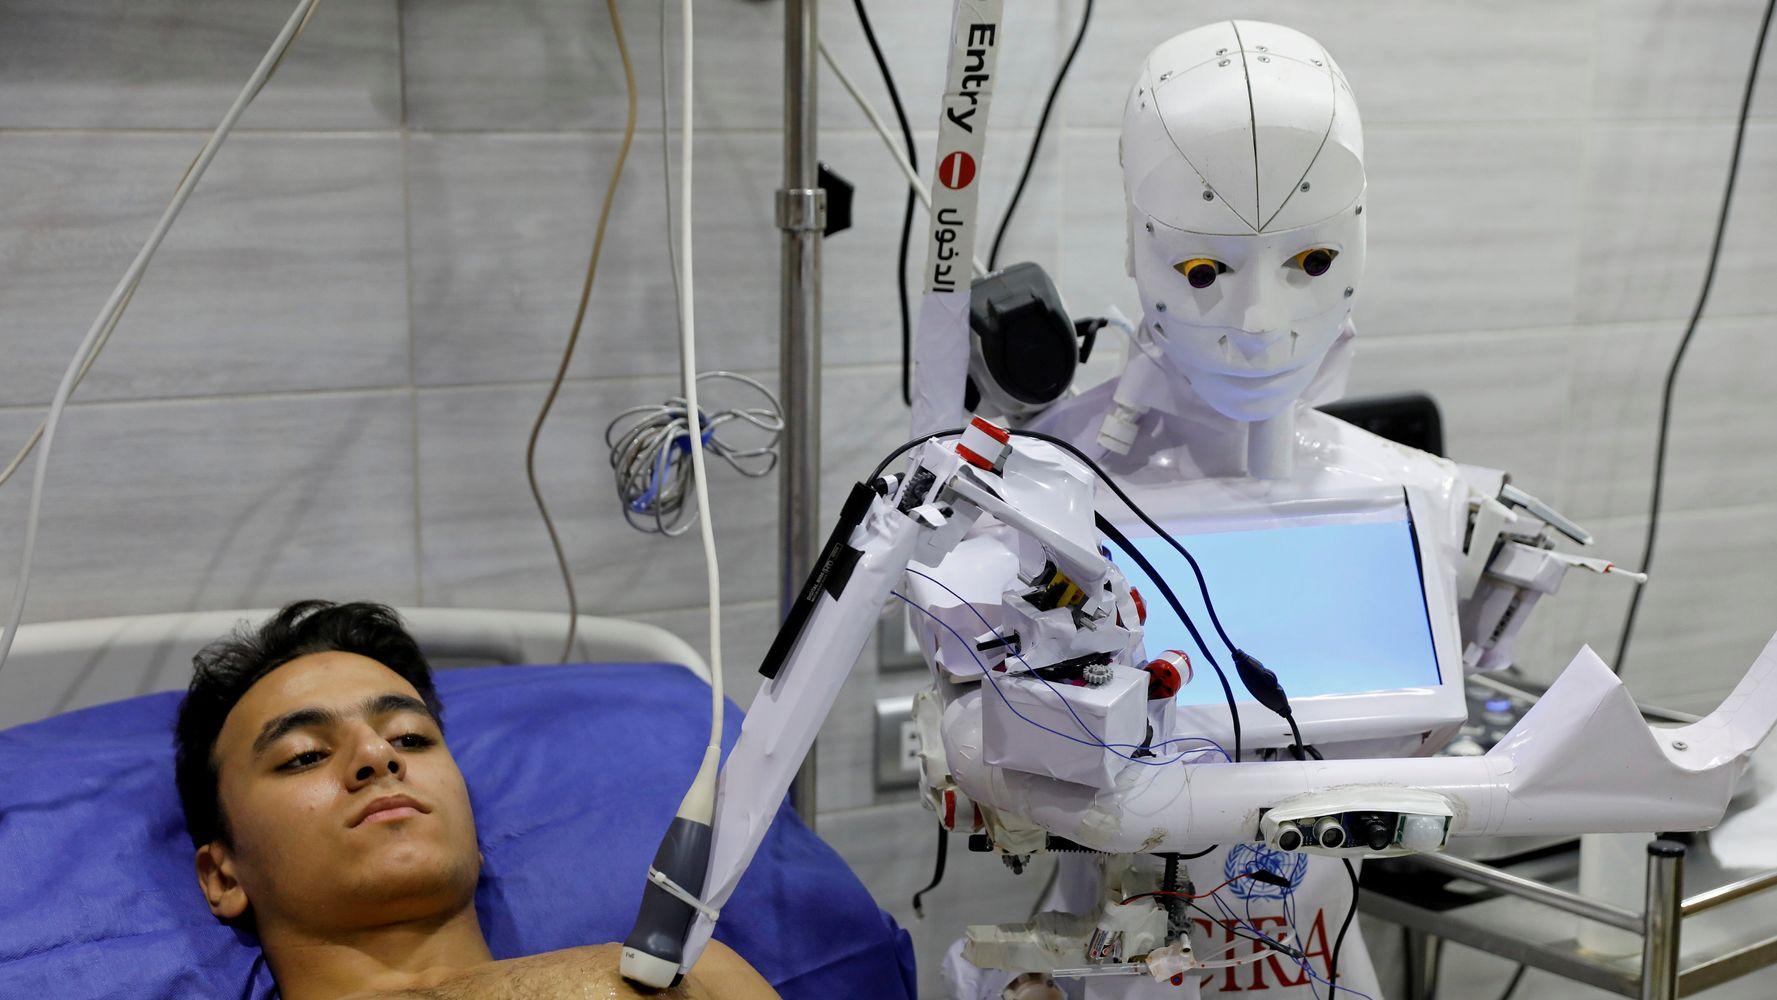 △埃及工程师发明Cira02智能机器人，可为新冠病毒测试进行取样，完成测量体温等工作。帮助医护人员节省防护用品，同时降低医护人员感染新冠病毒的风险。